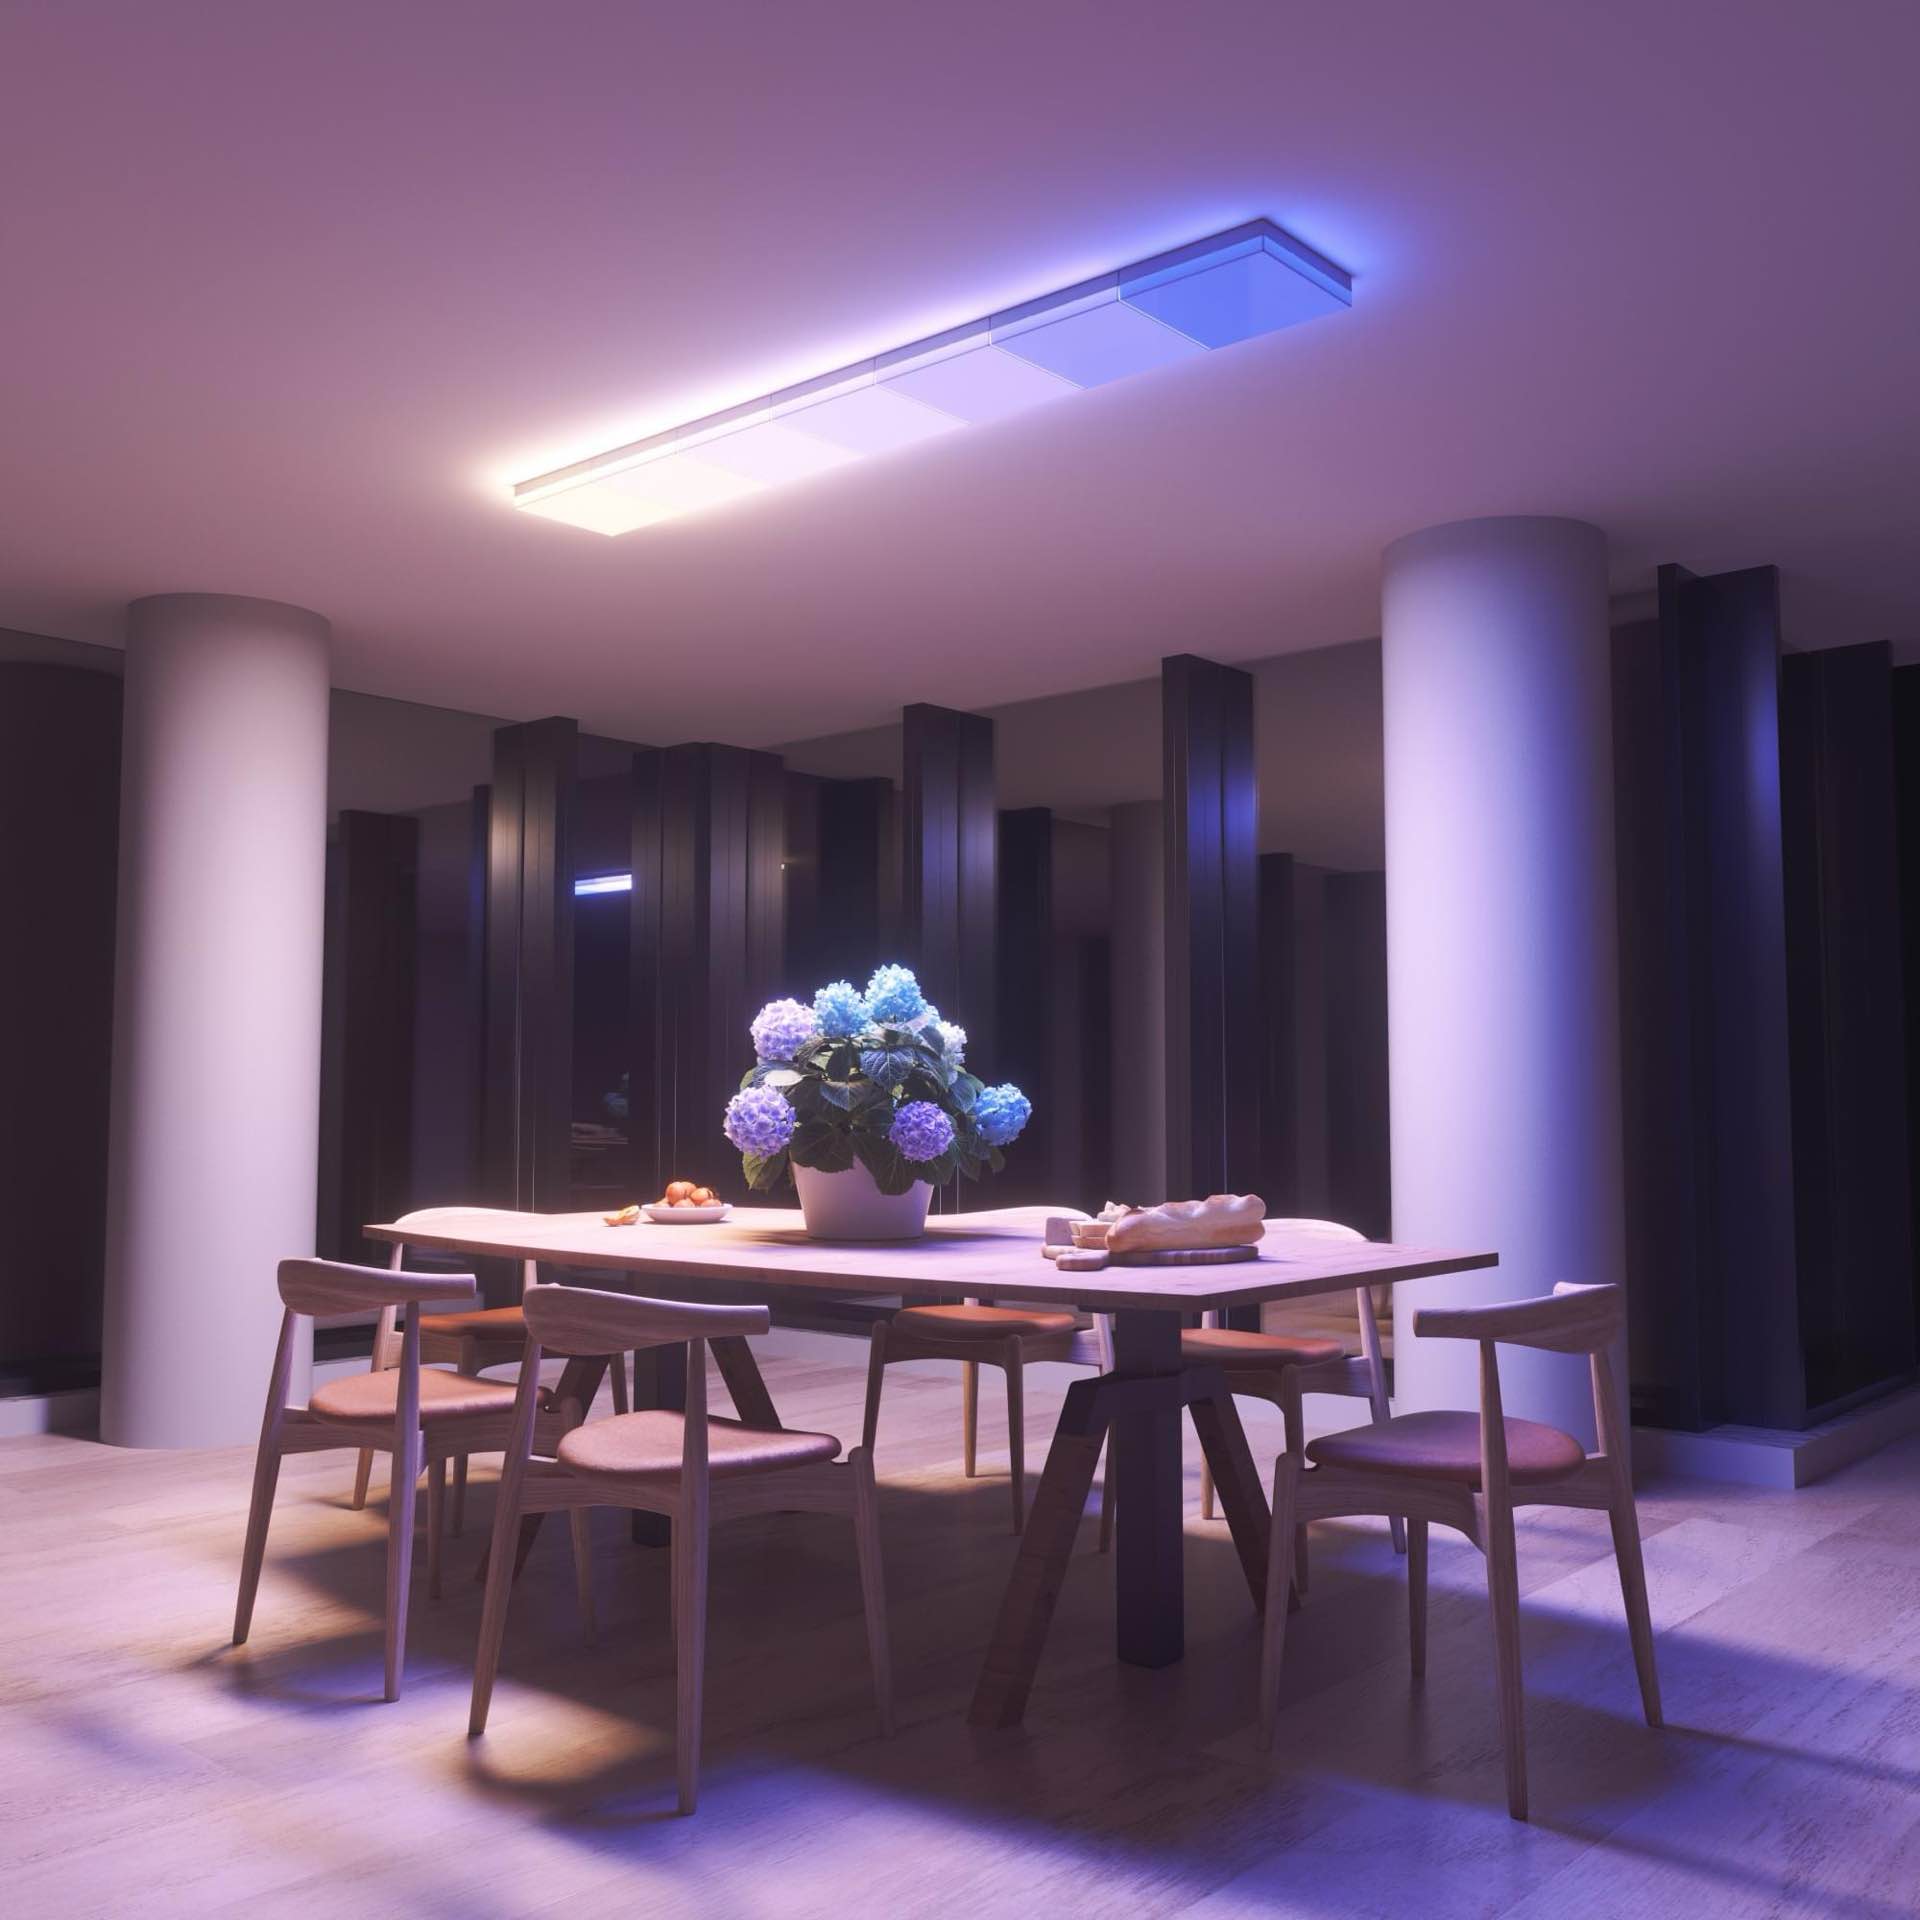 nanoleaf-skylight-smart-ceiling-light-panels-4